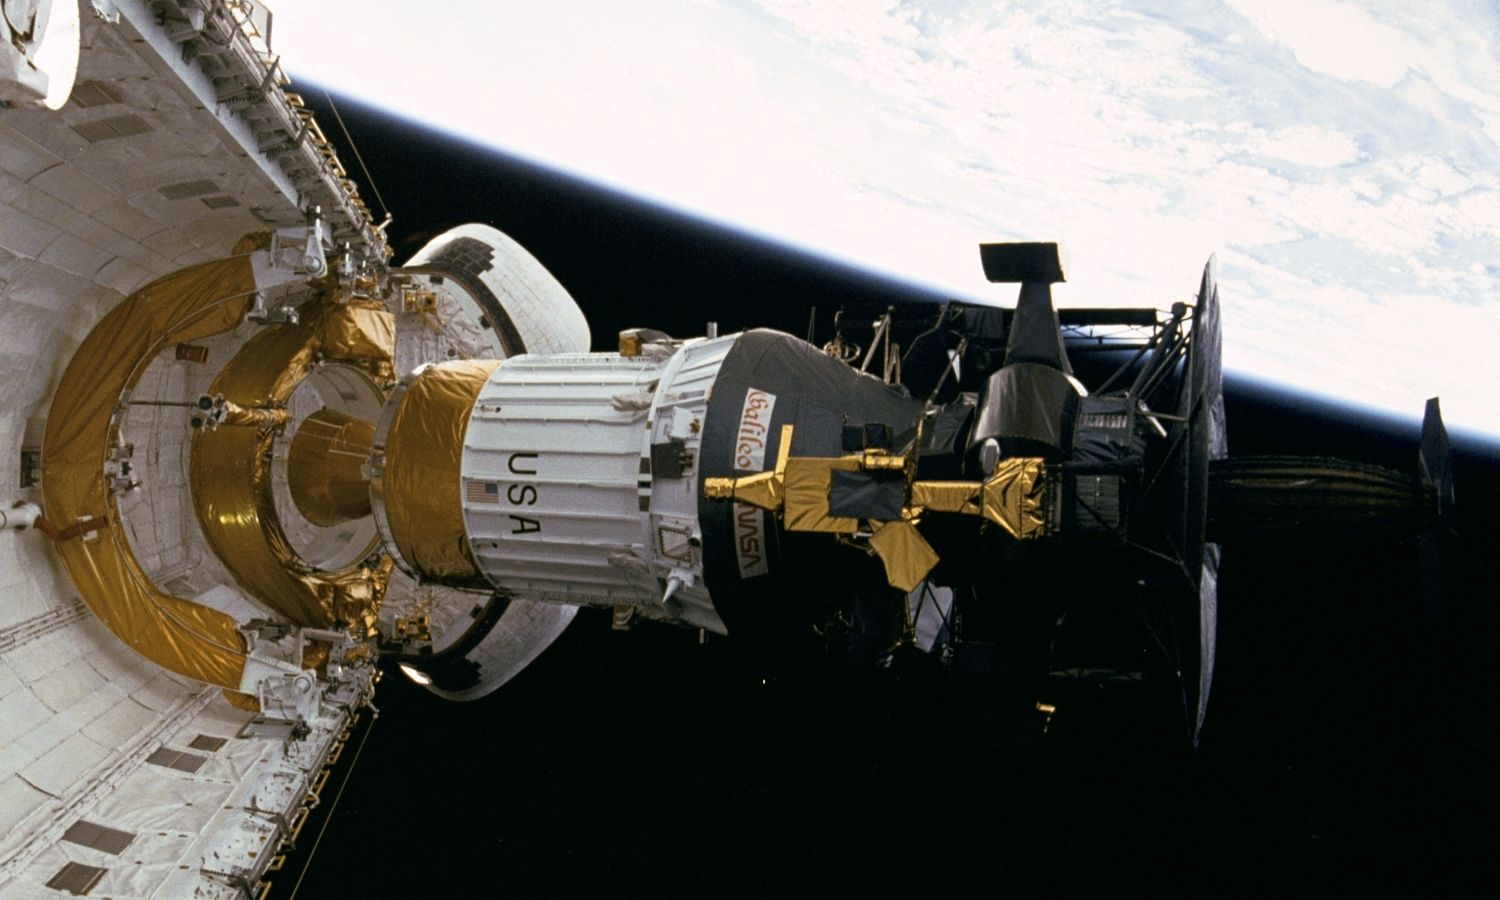 OTD in 2001: NASA's Galileo spacecraft skimmed by Jupiter's moon